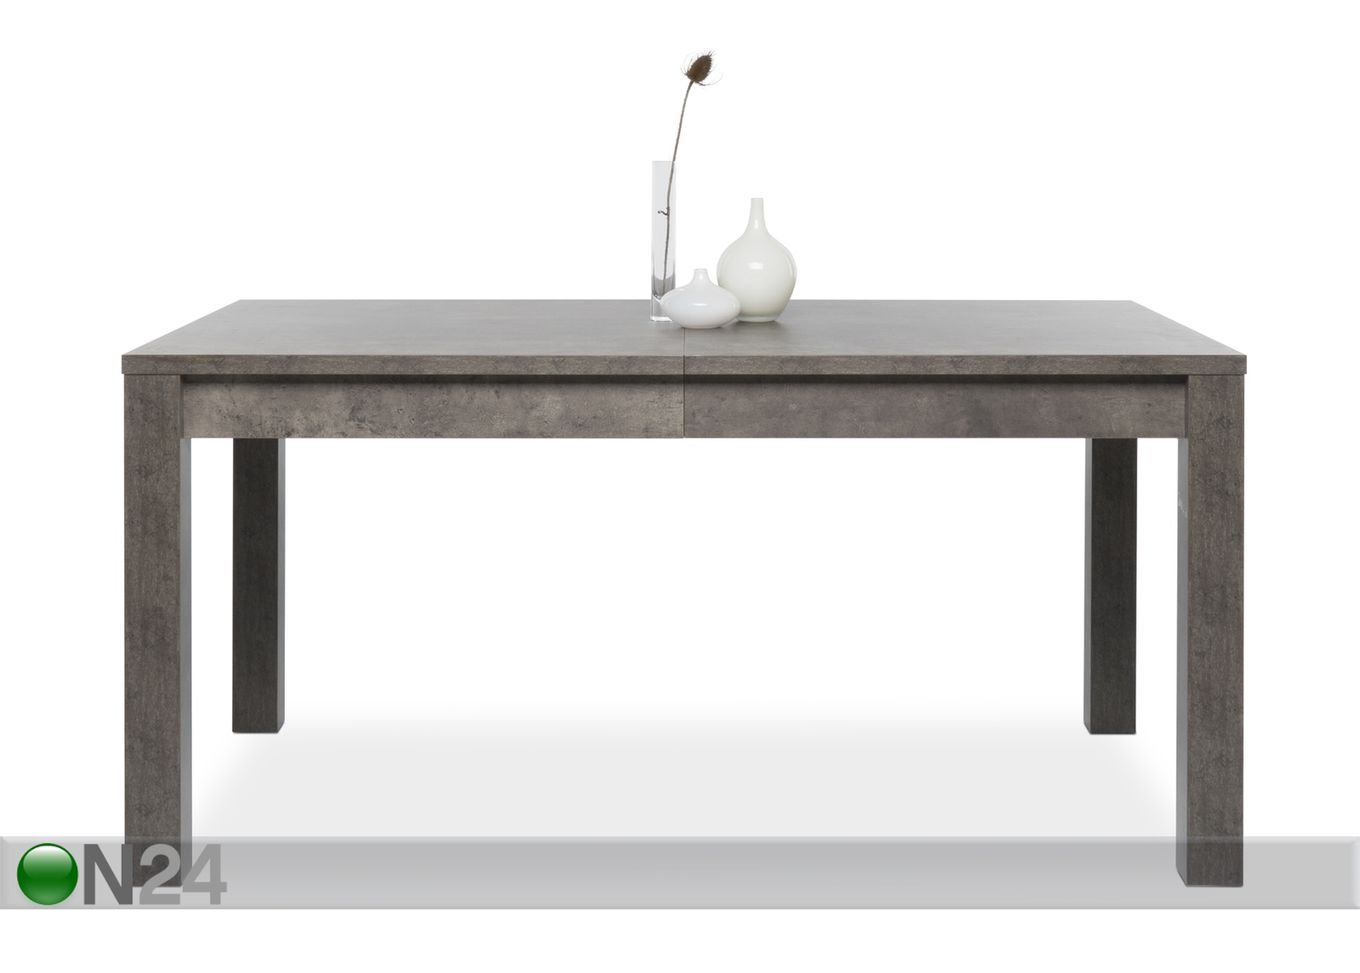 Удлиняющийся обеденный стол 160-240x90 cm увеличить